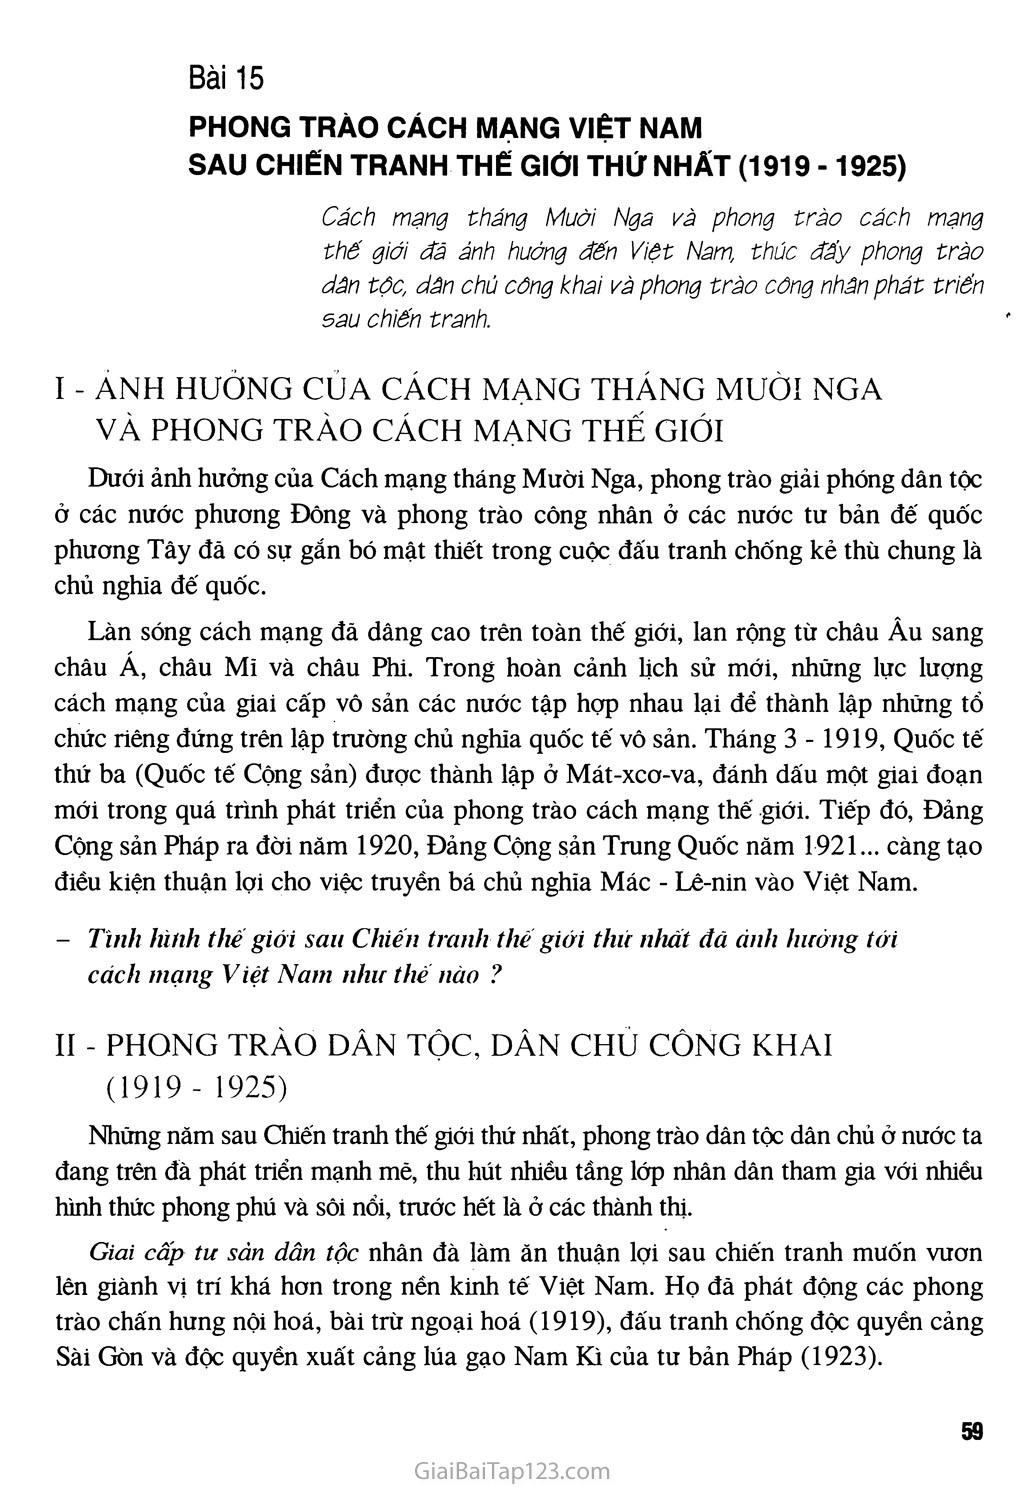 Bài 15 - Phong trào cách mạng Việt Nam sau Chiến tranh thế giới thứ nhất (1919 - 1925) trang 1